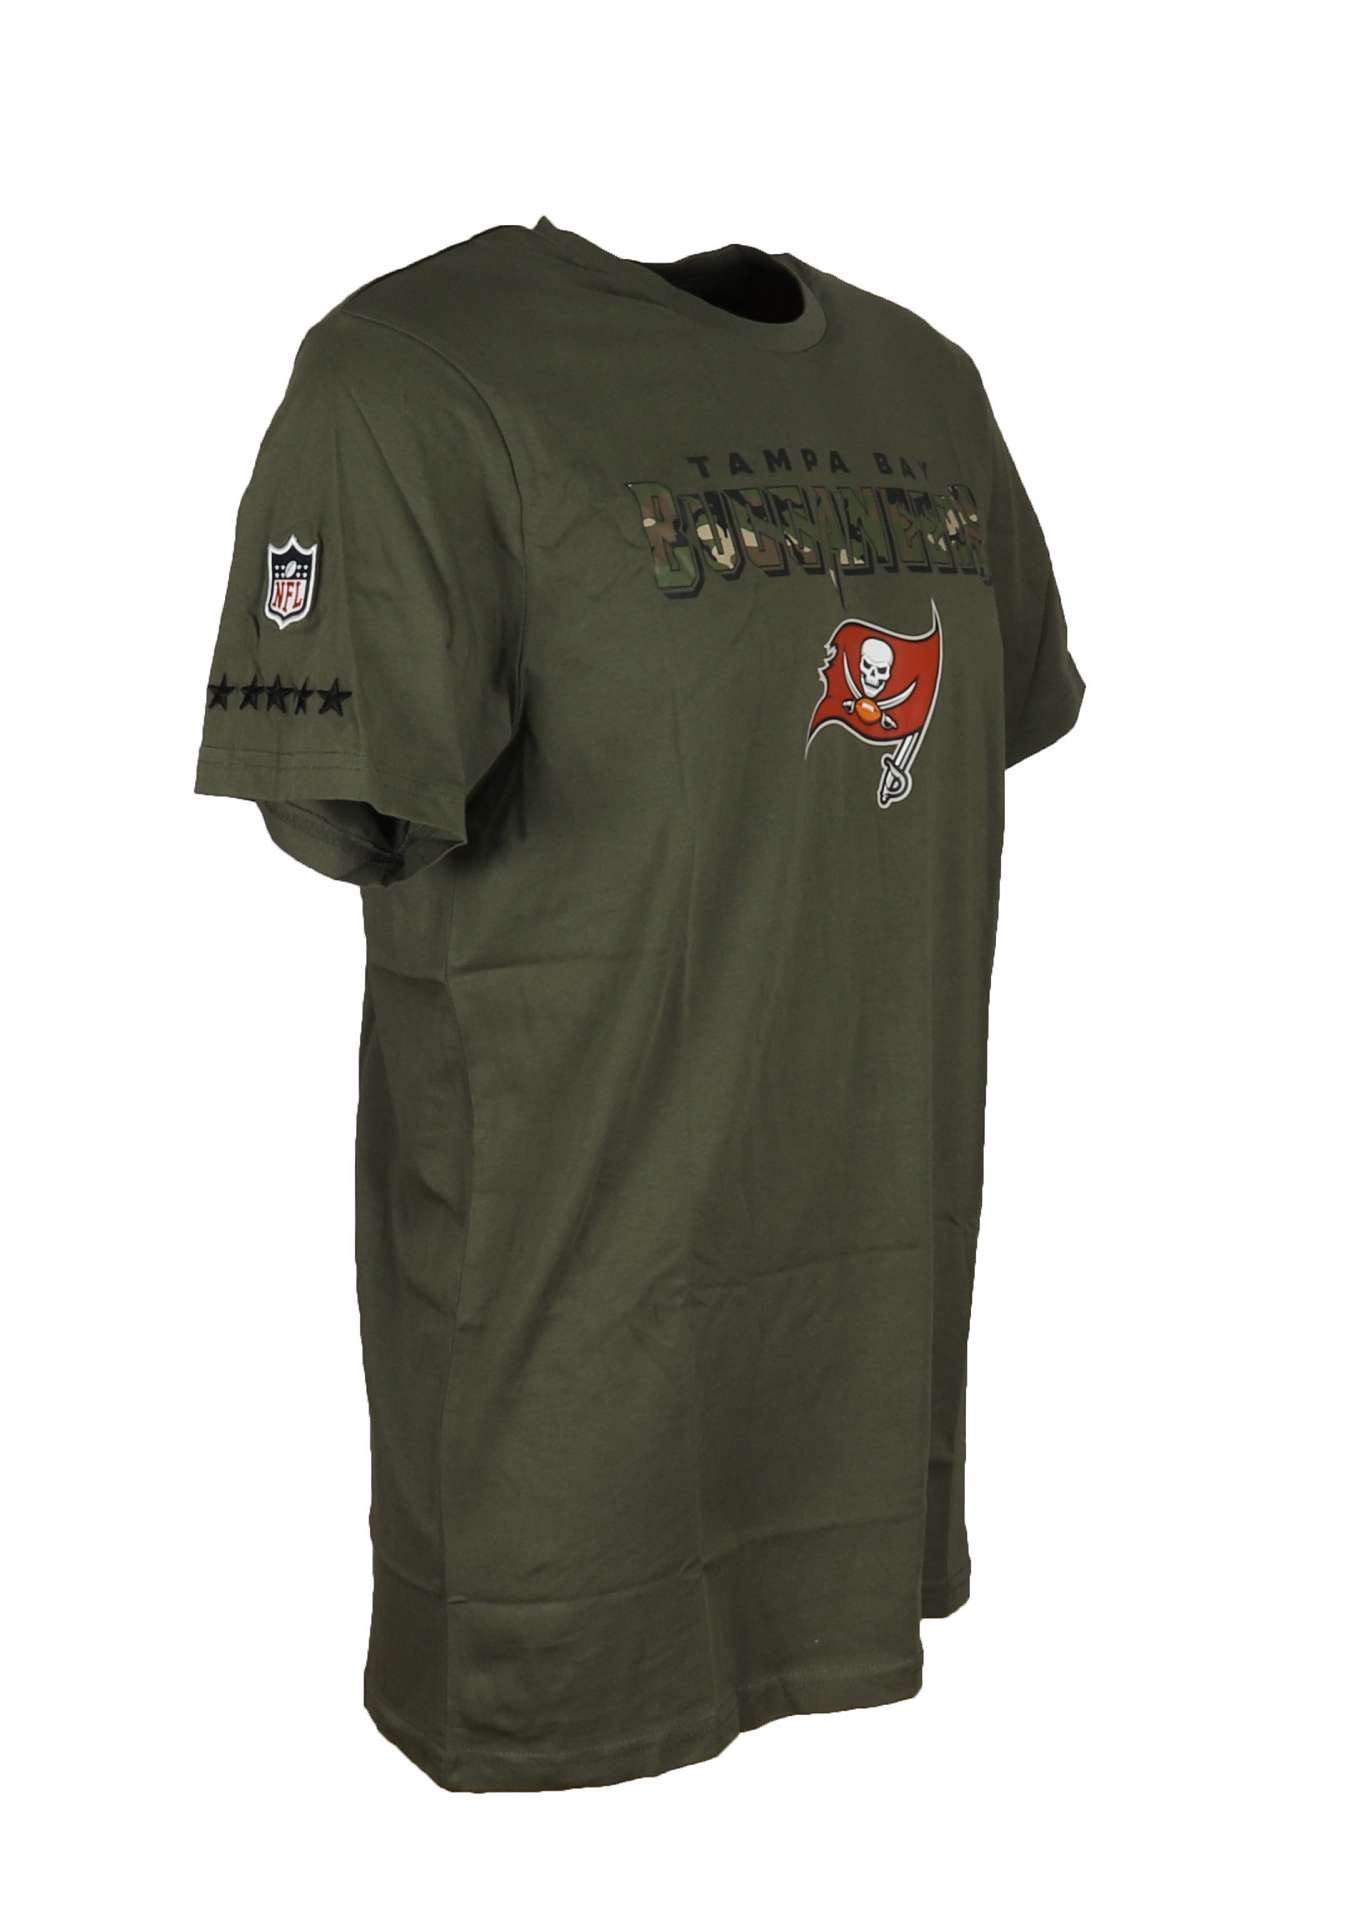 Tampa Bay Buccaneers Olive NFL Camo Wordmark T-Shirt New Era